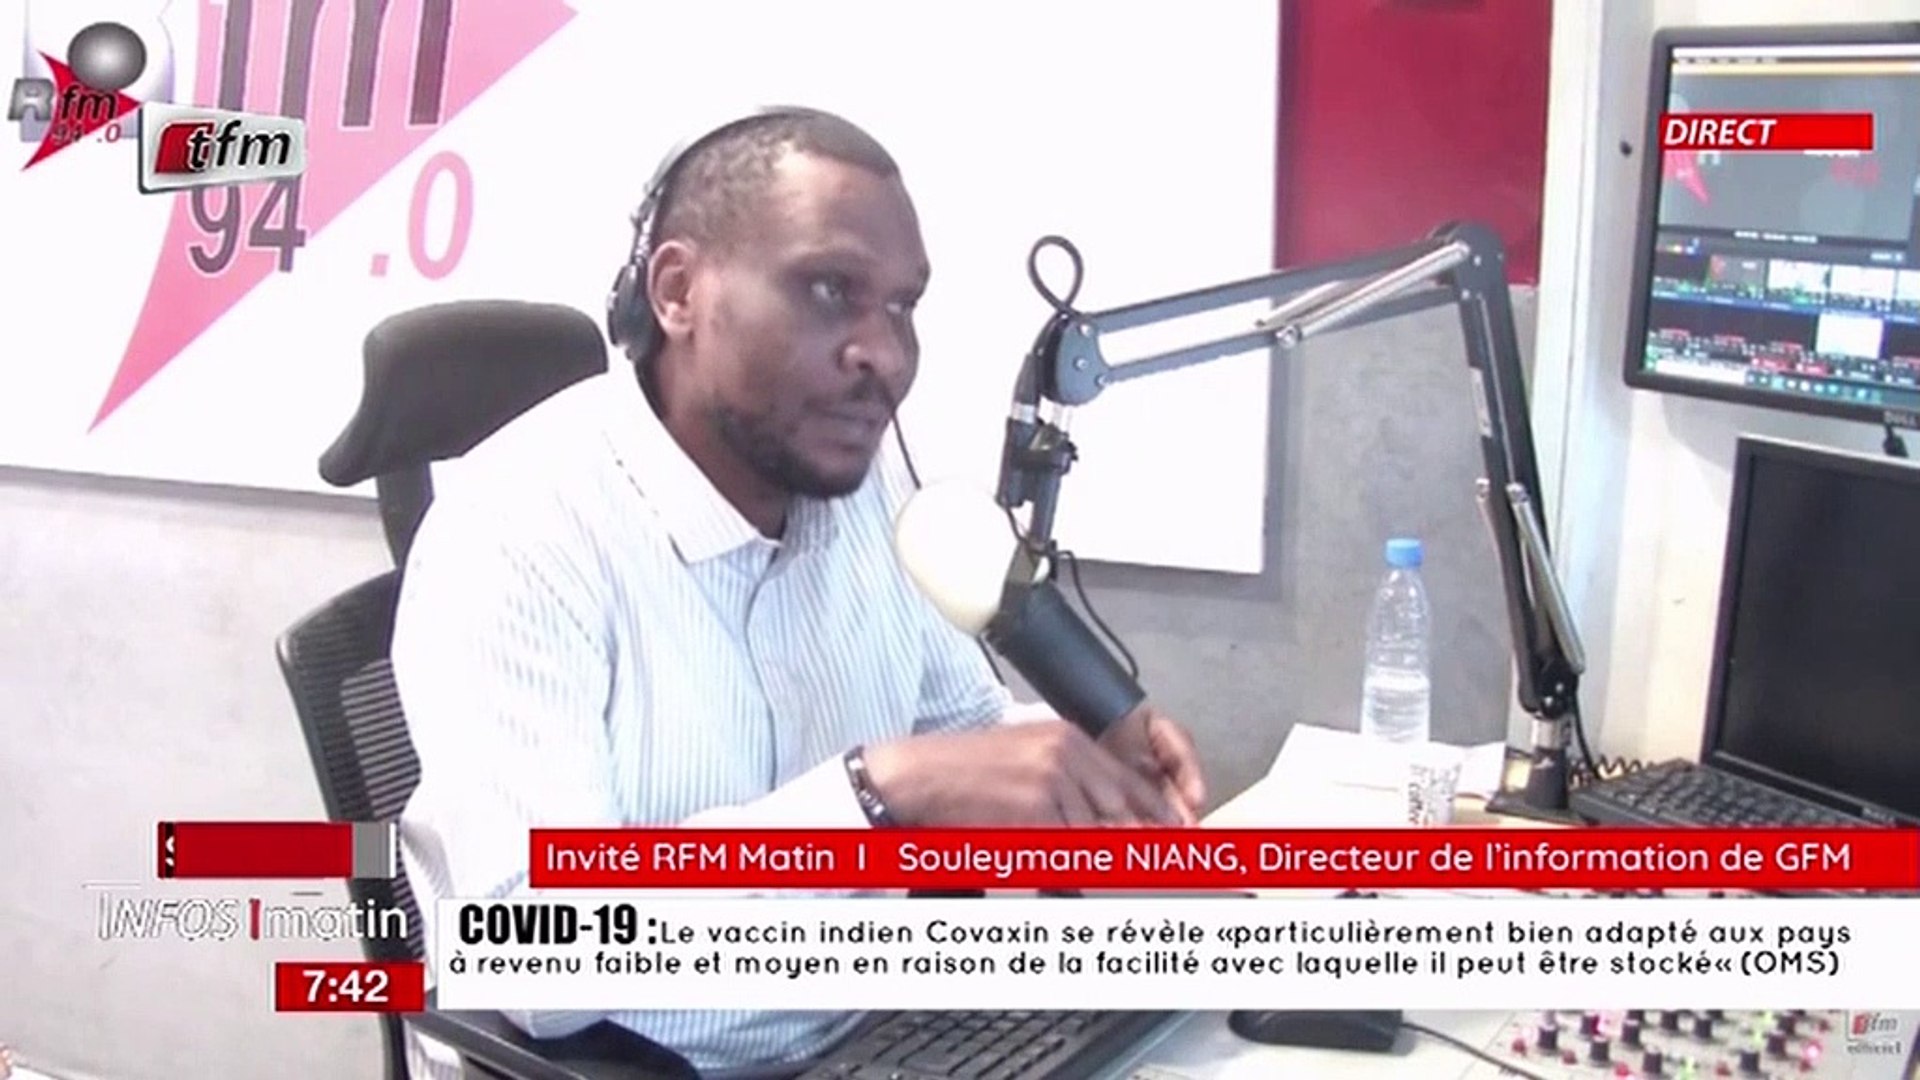 Souleymane Niang, Directeur de l' information de GFM invité dans RFM matin  du 04 Novembre 2021 - Vidéo Dailymotion